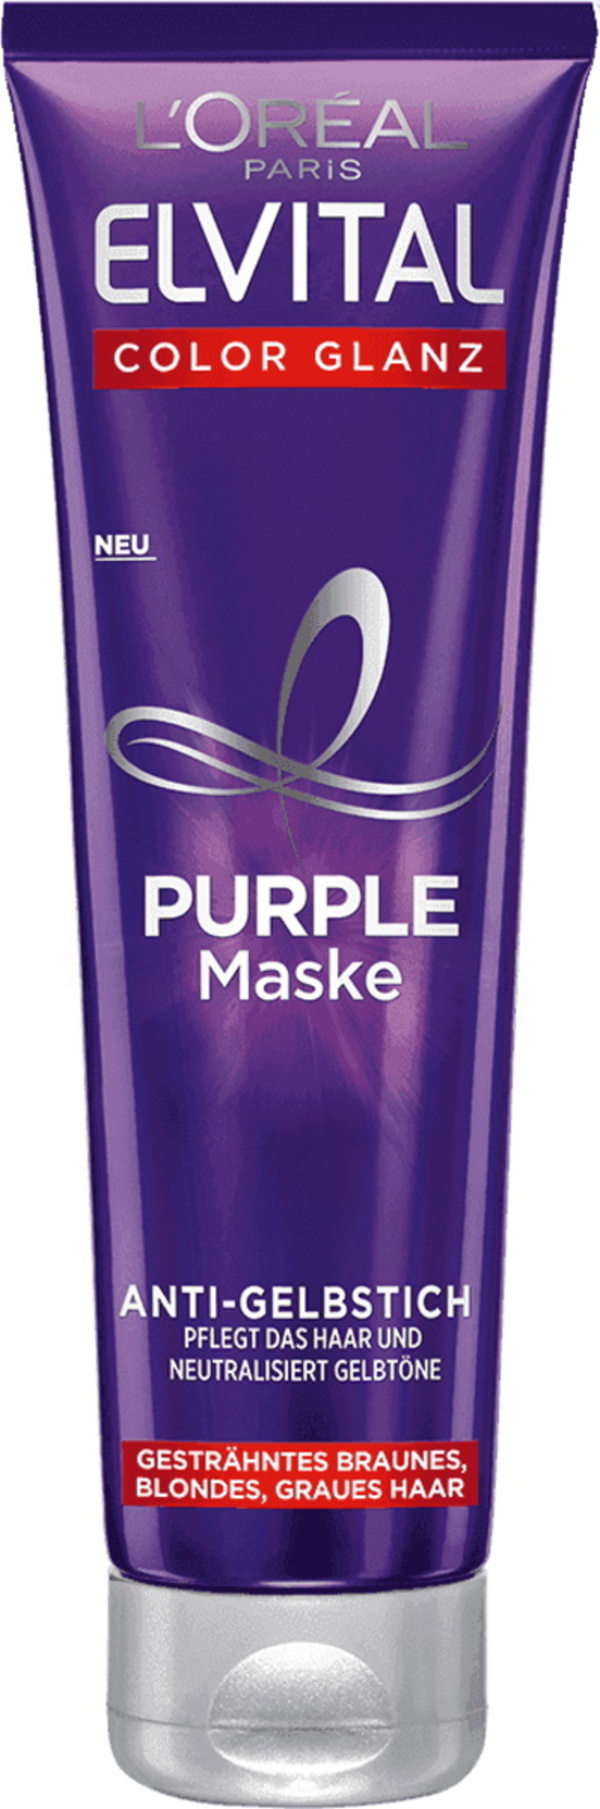 Bild 1 von L'Oreal Elvital Color Glanz Purple Maske 150ML